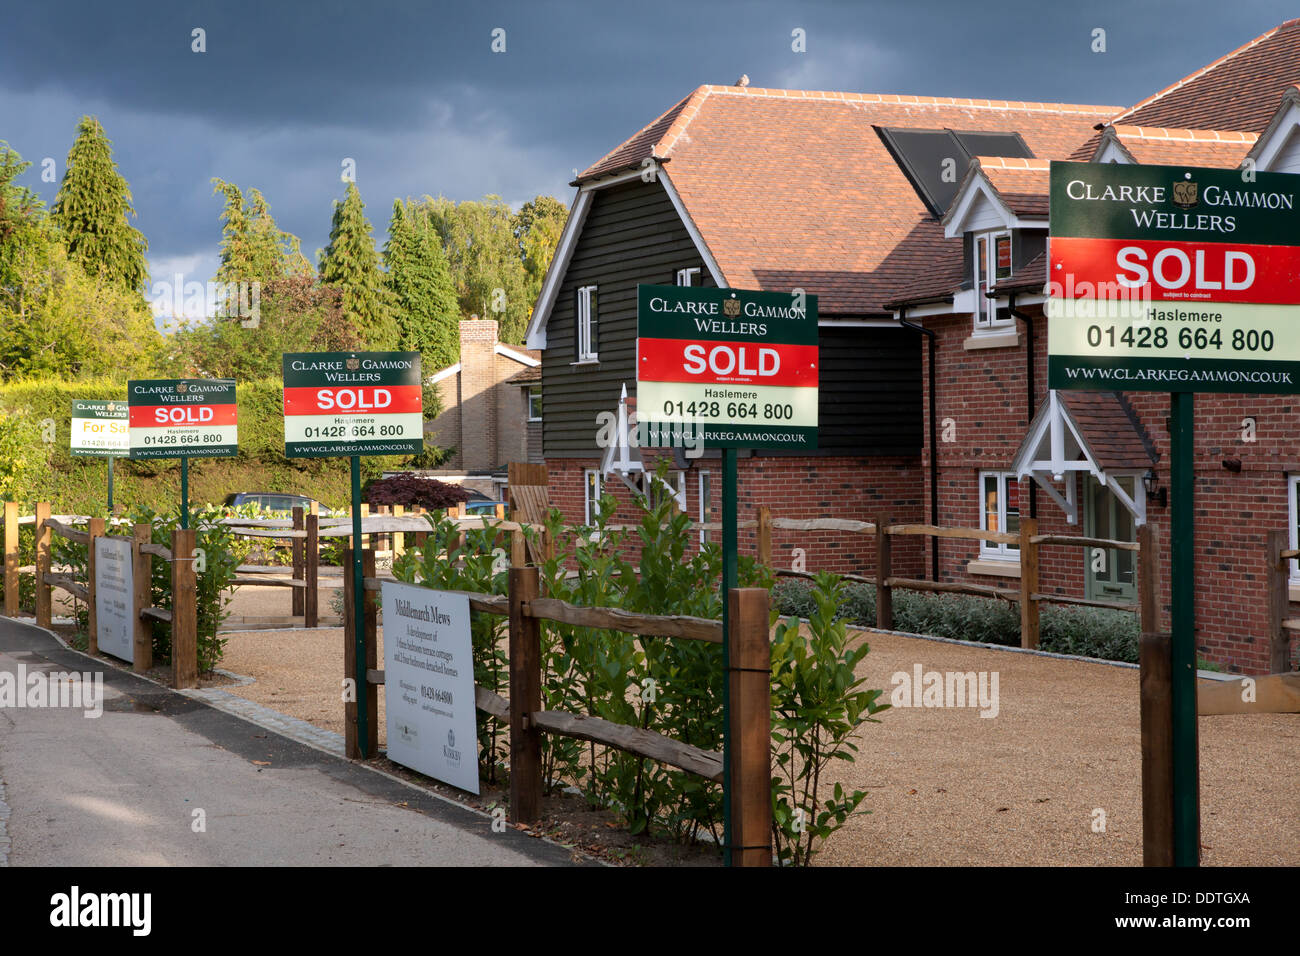 Verkauft und für Verkauf Zeichen außerhalb neu gebauten Häusern in Hindhead Haslemere Surrey Stockfoto